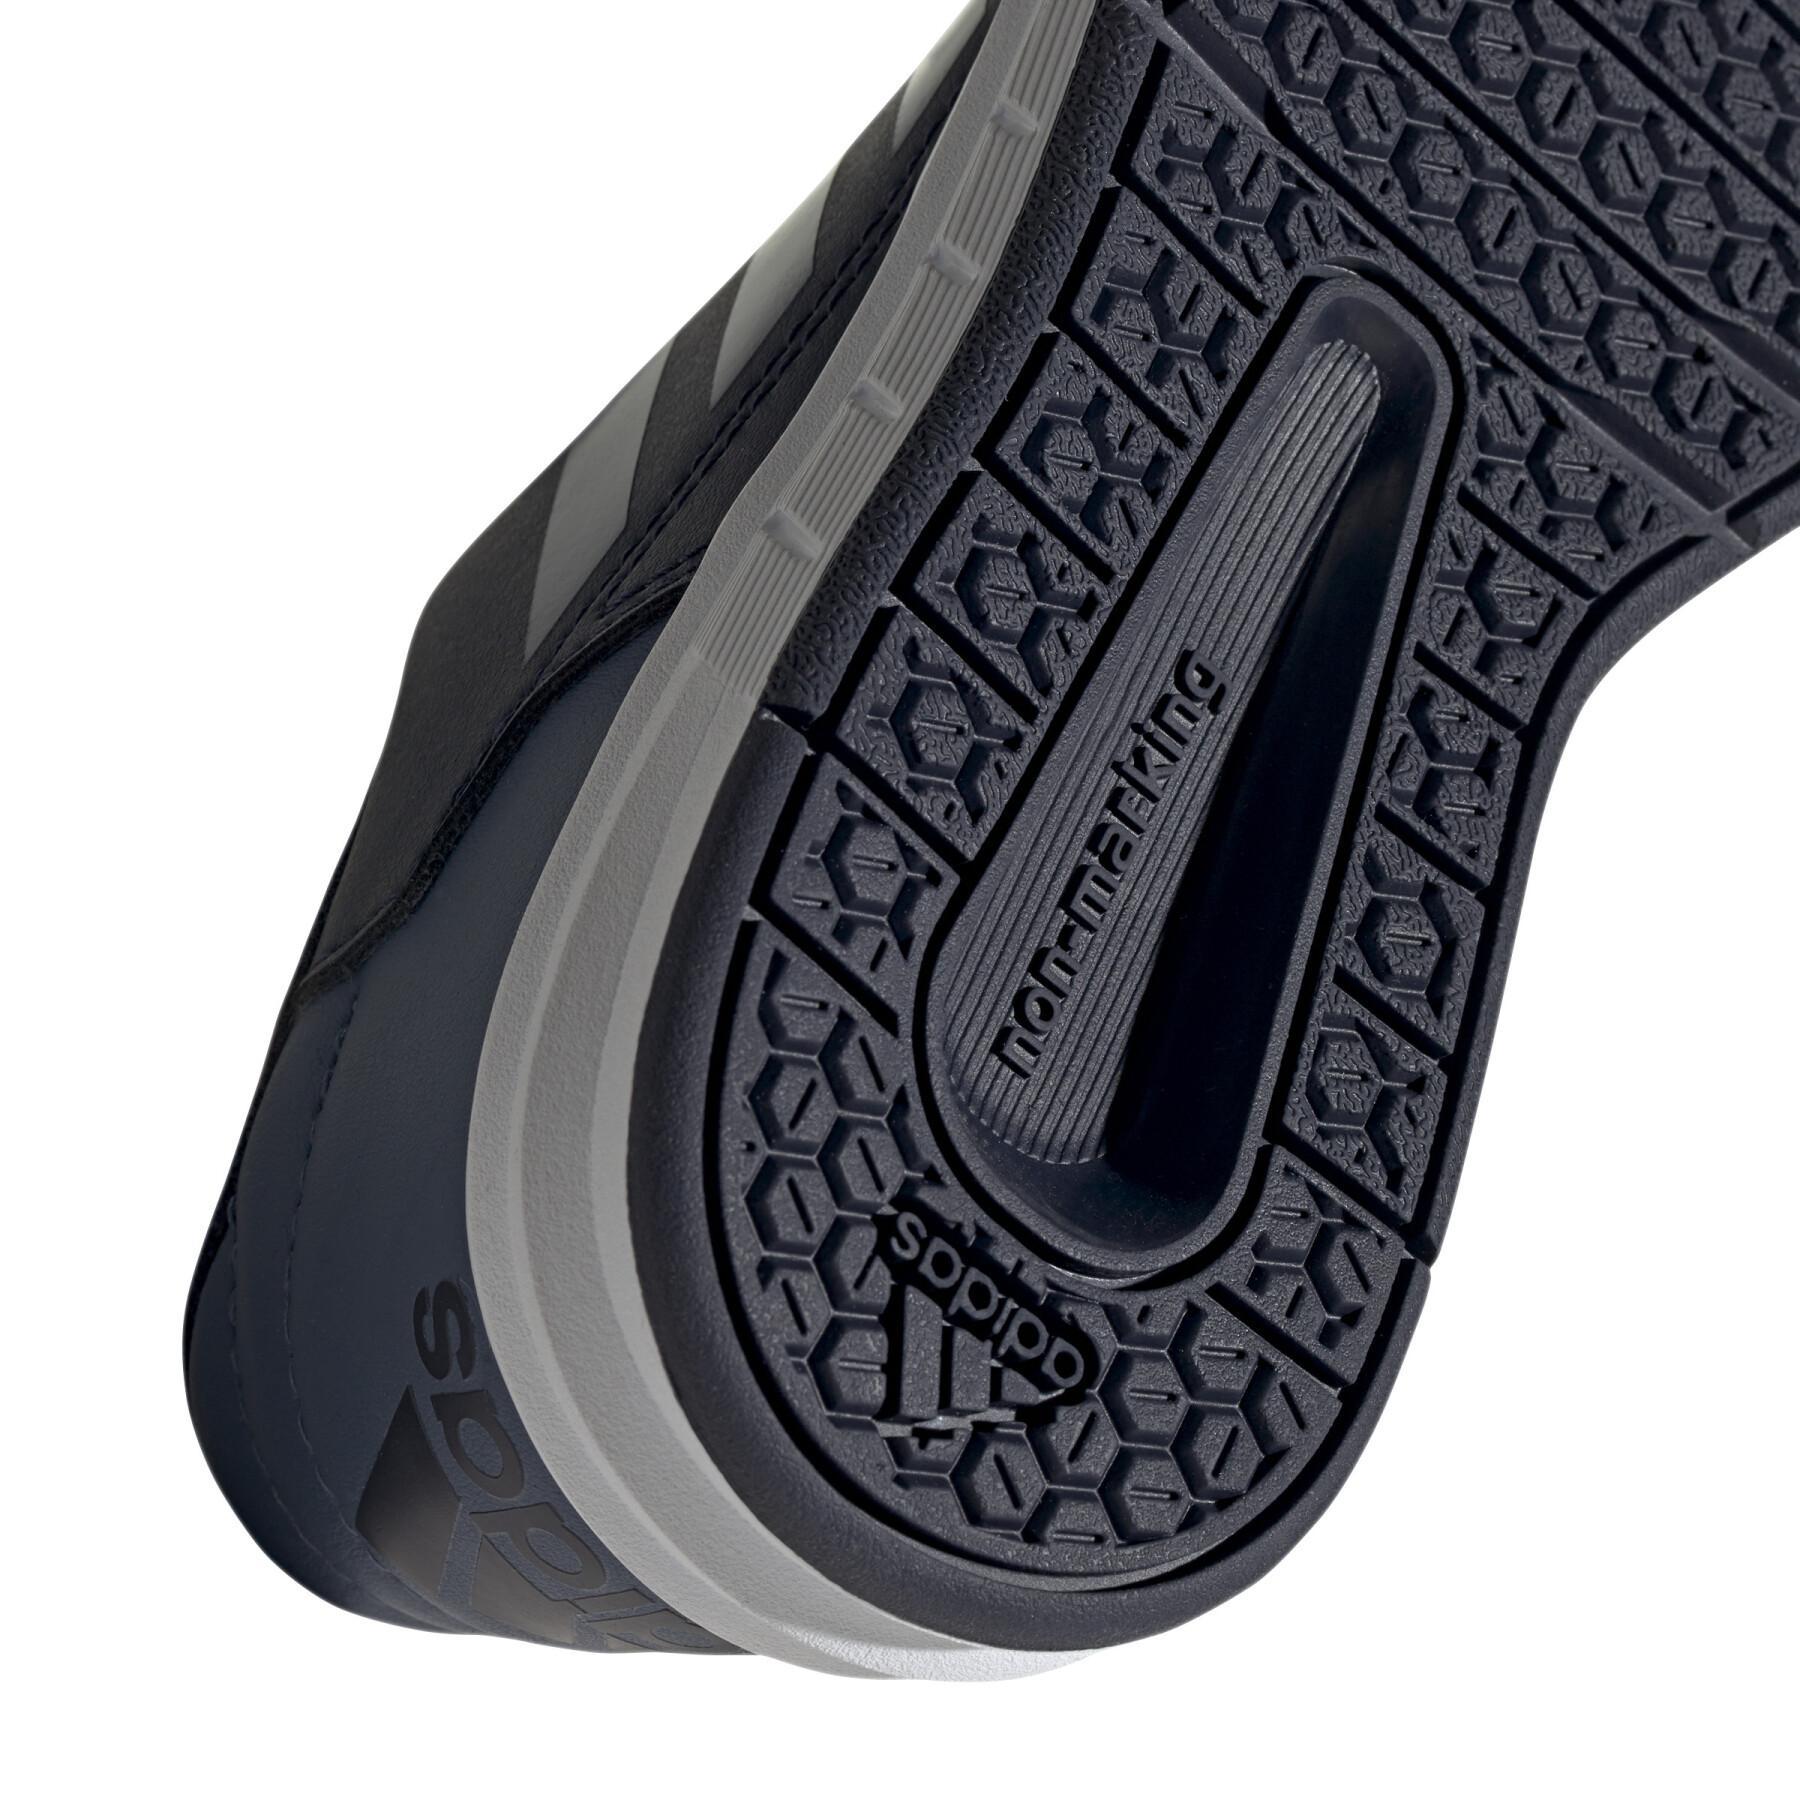 Zapatillas de running infantil adidas AltaSport